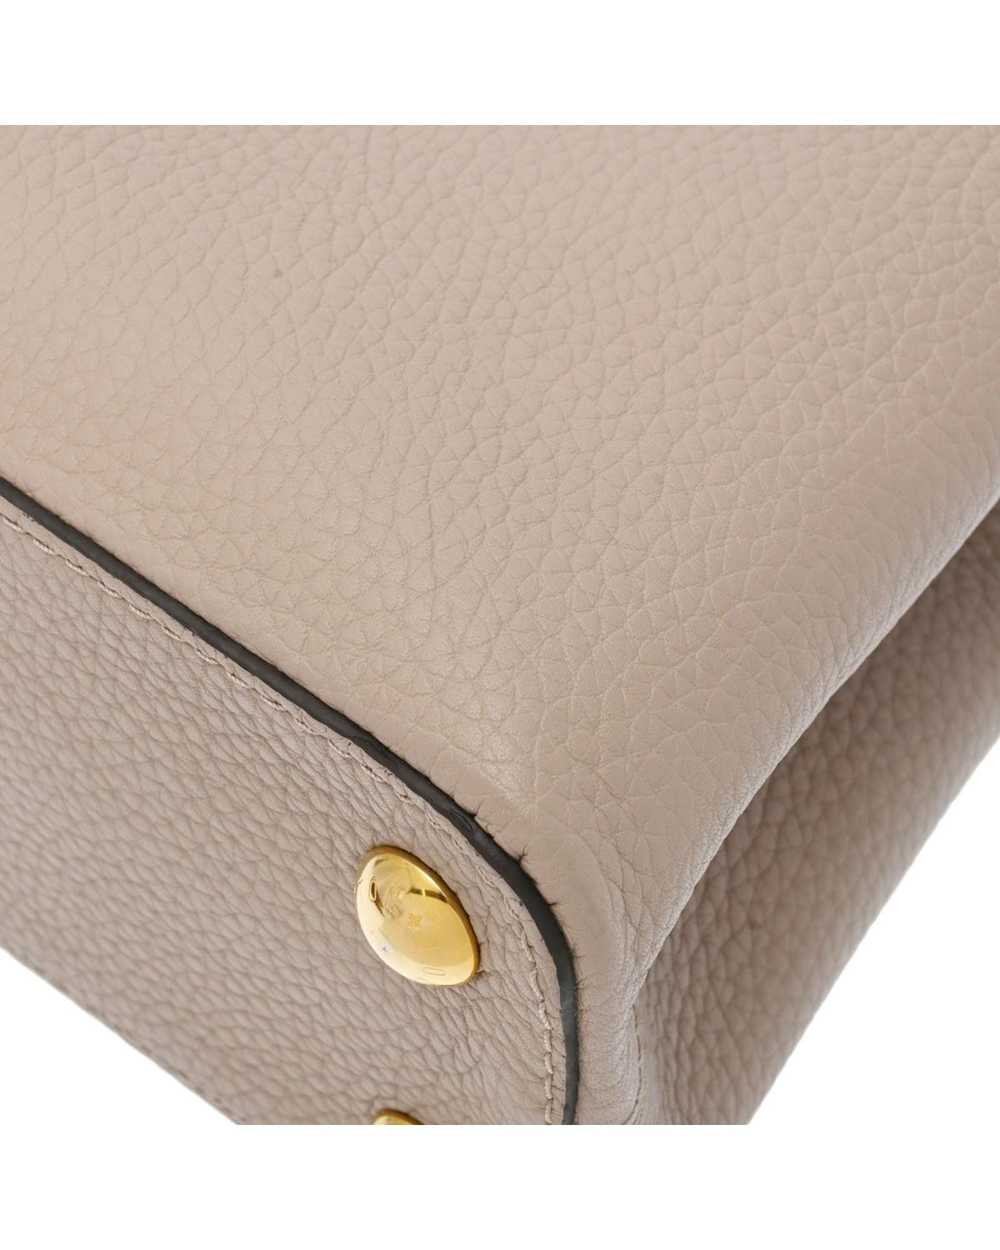 Louis Vuitton Sophisticated Leather Flap Handbag - image 9